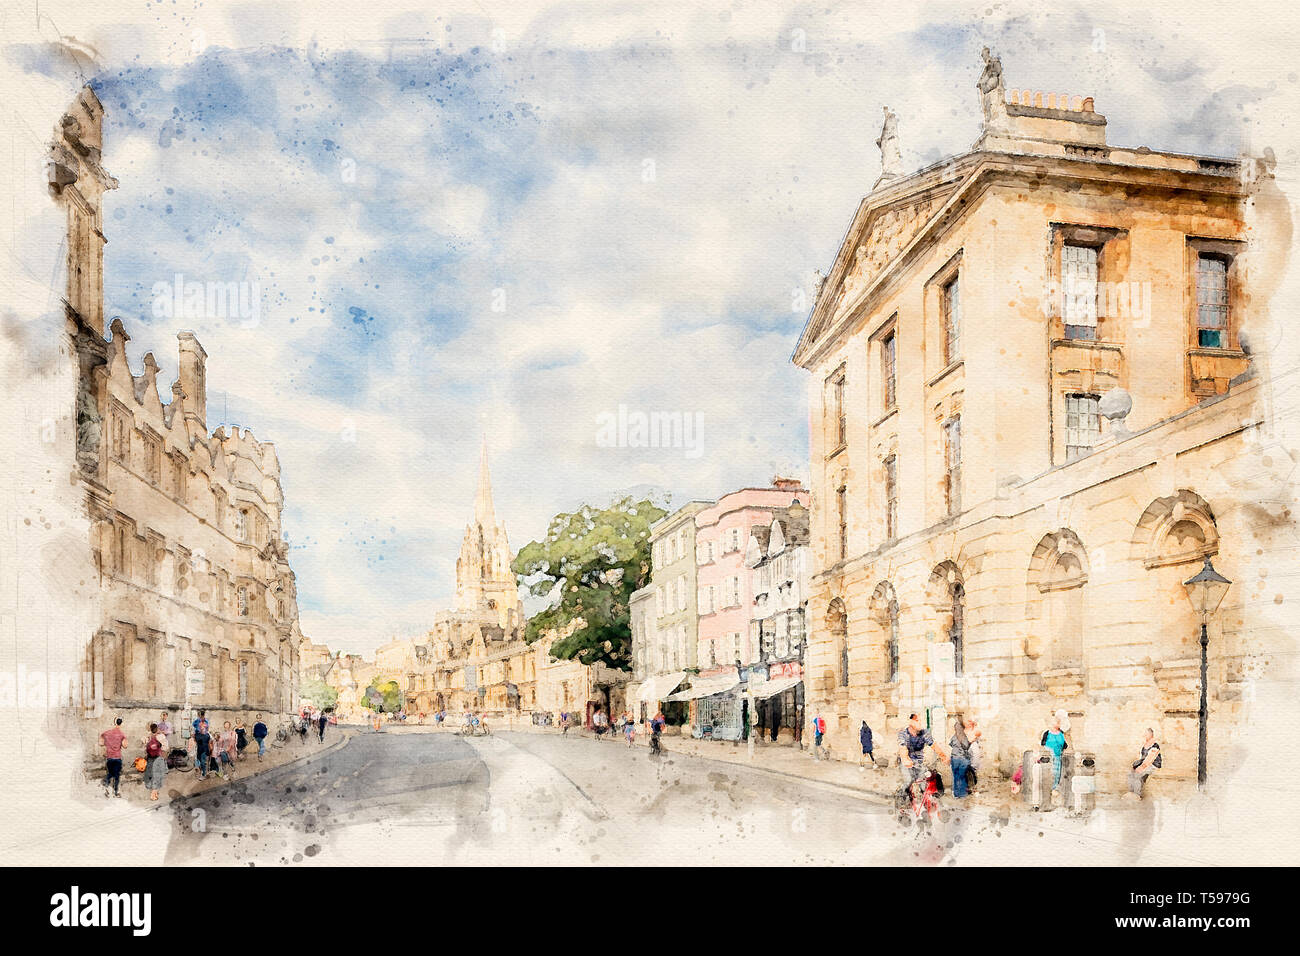 Effet aquarelle à partir d'une photo de la ville d'Oxford, Oxfordshire, England, UK Banque D'Images